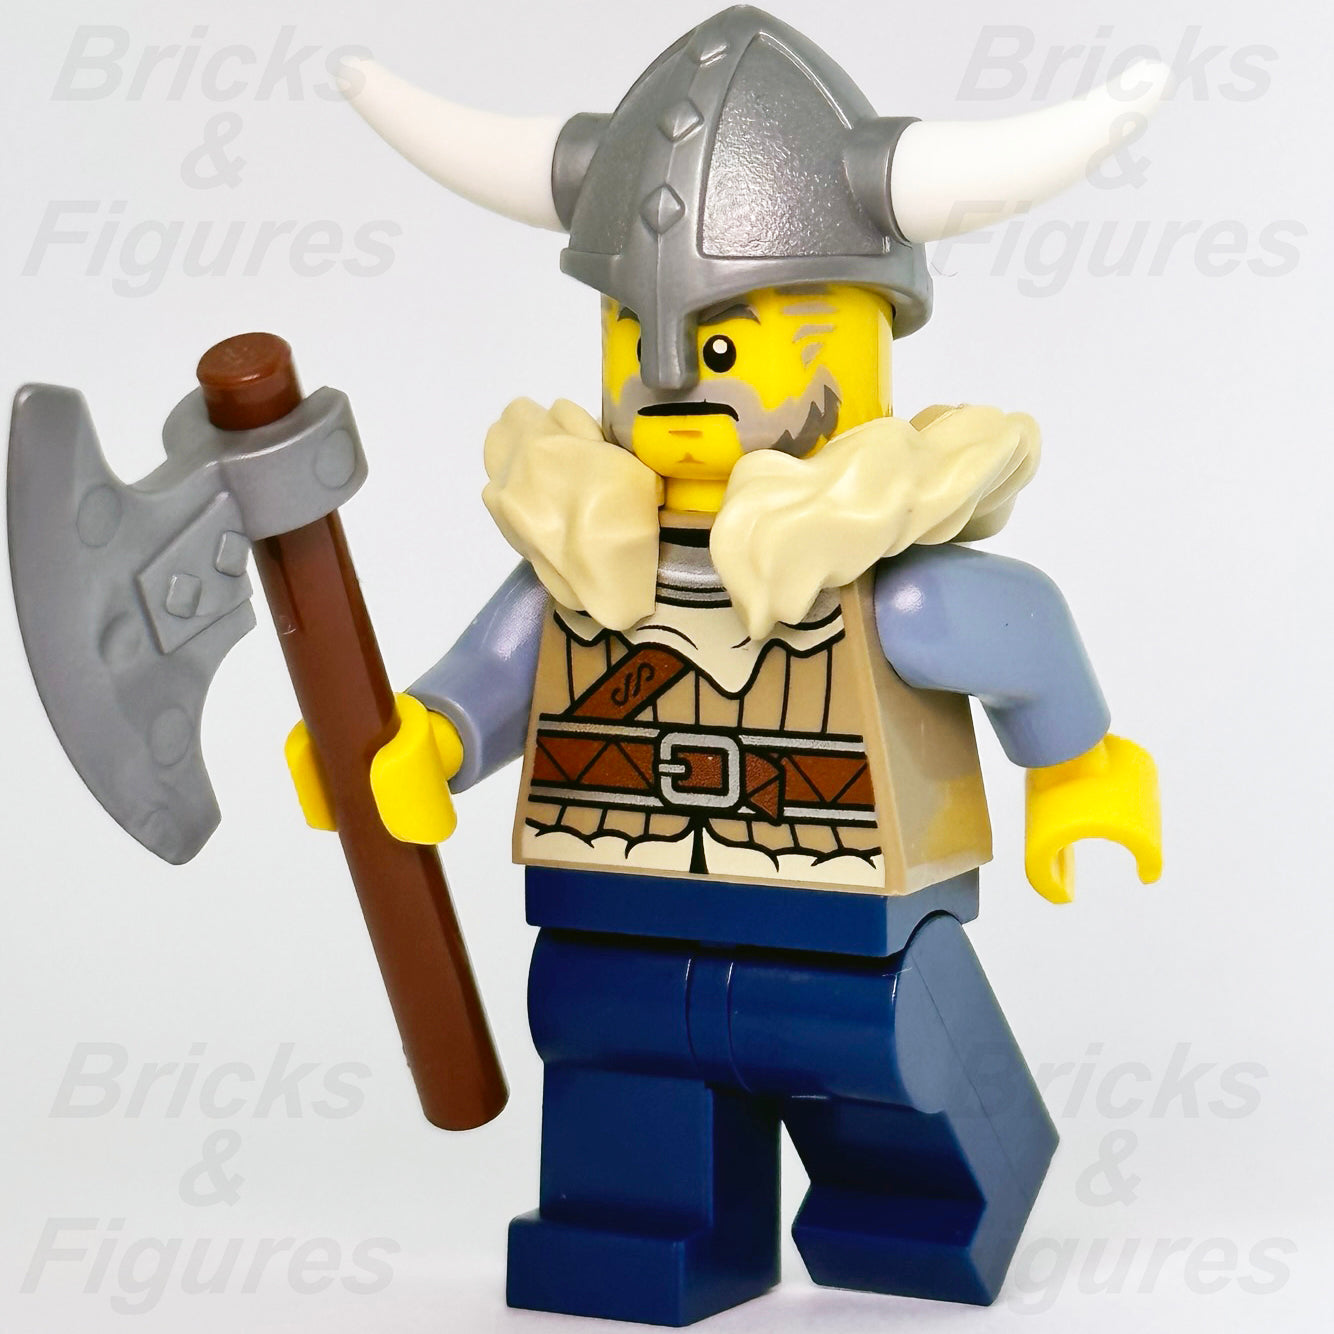 LEGO Viking Minifigures